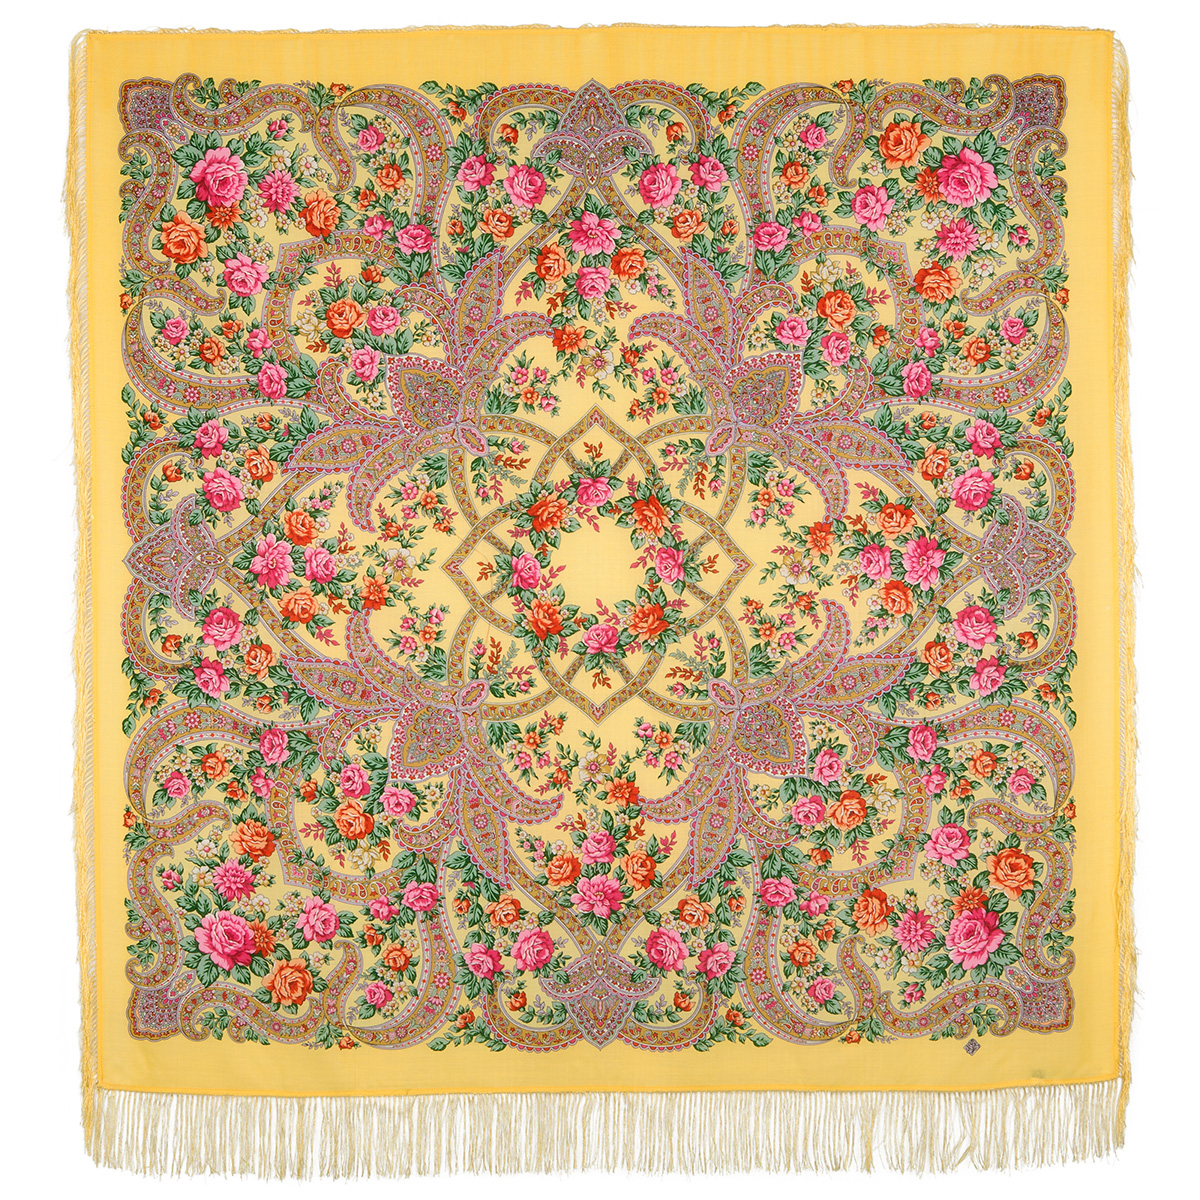 Платок женский Павловопосадский платок 1674 желтый/розовый/красный/зеленый, 146х146 см